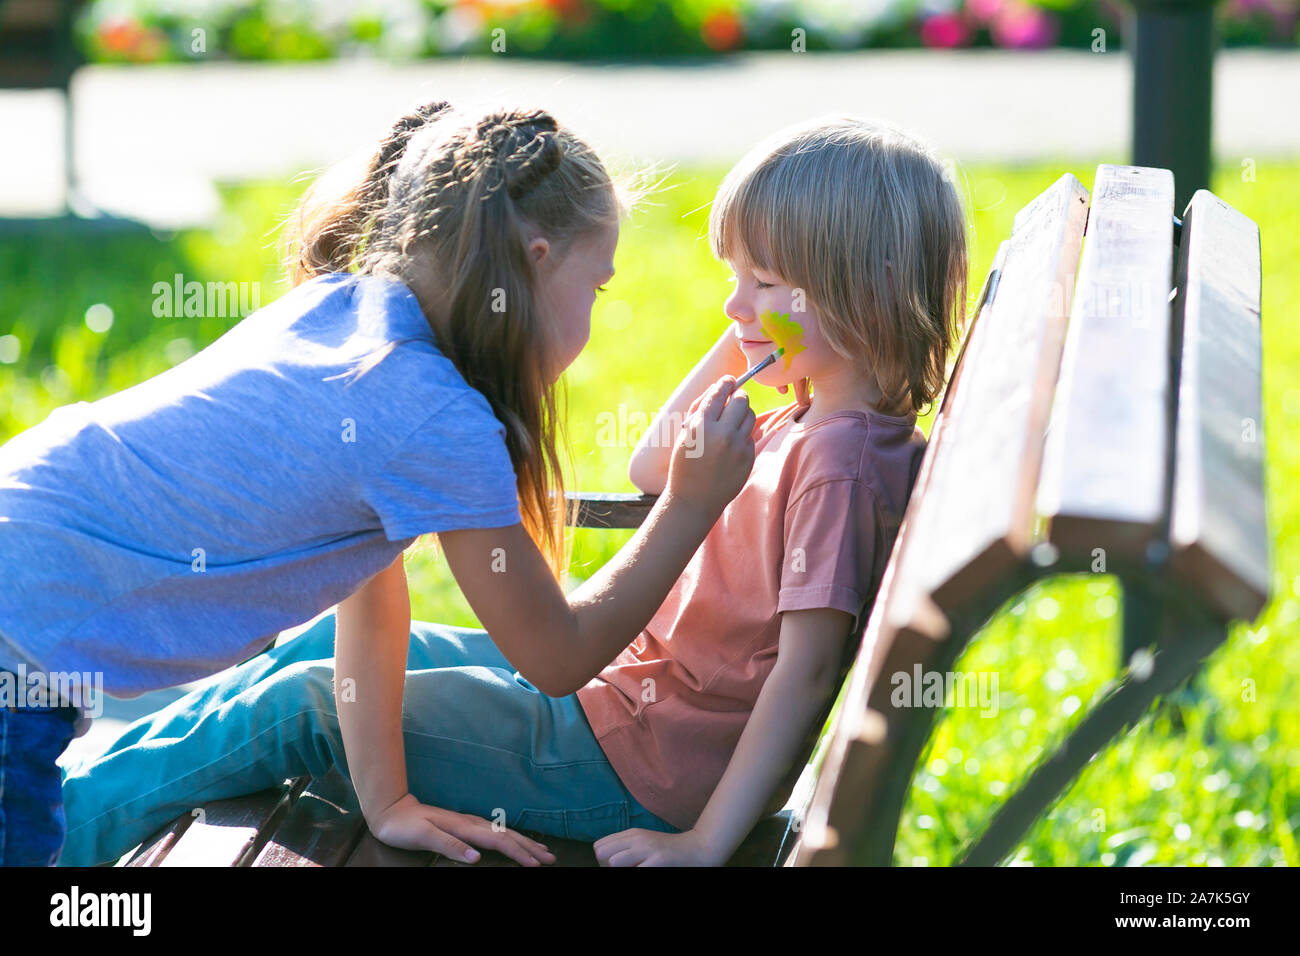 Une petite fille est l'application de maquillage aqua le visage du garçon  de 5 ans qui est assise sur un banc dans un parc Photo Stock - Alamy